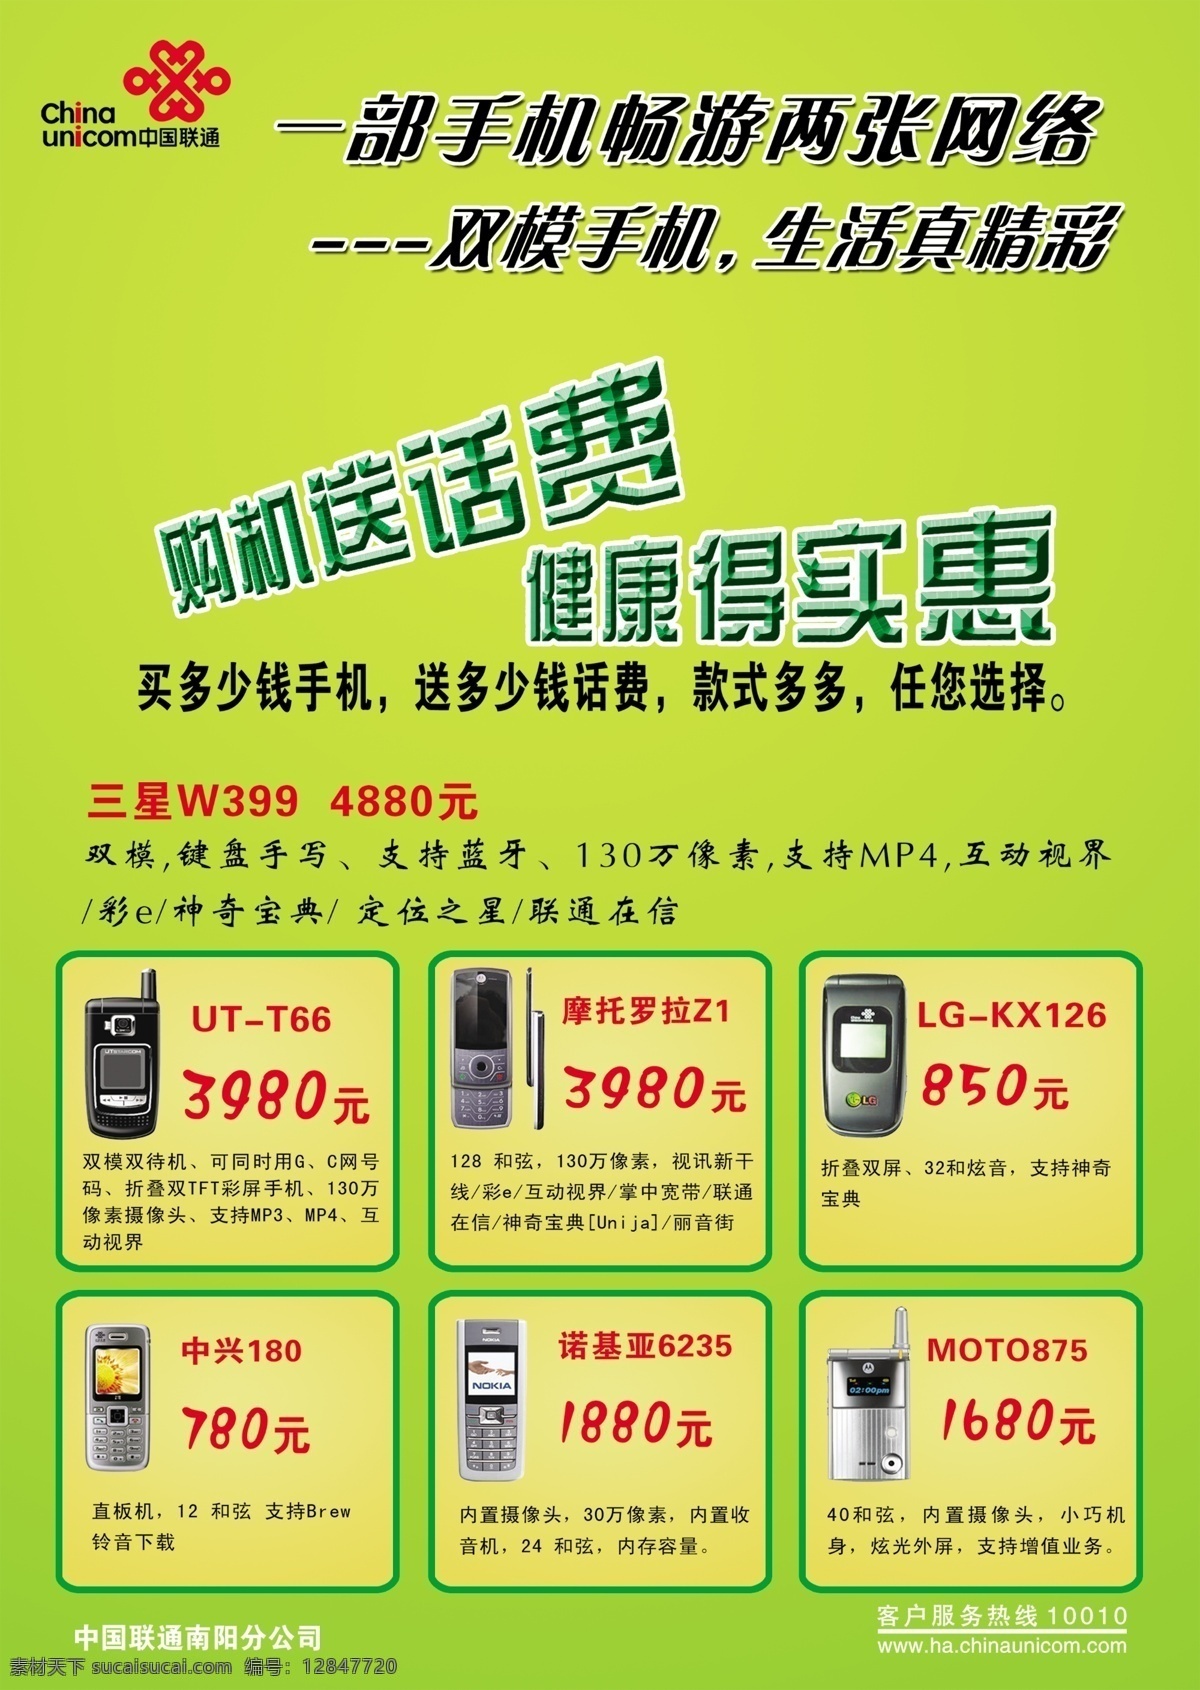 买 手机 送 话费 分层 标志 绿色背景 买手机送话费 源文件库 中国联通 字 矢量图 现代科技